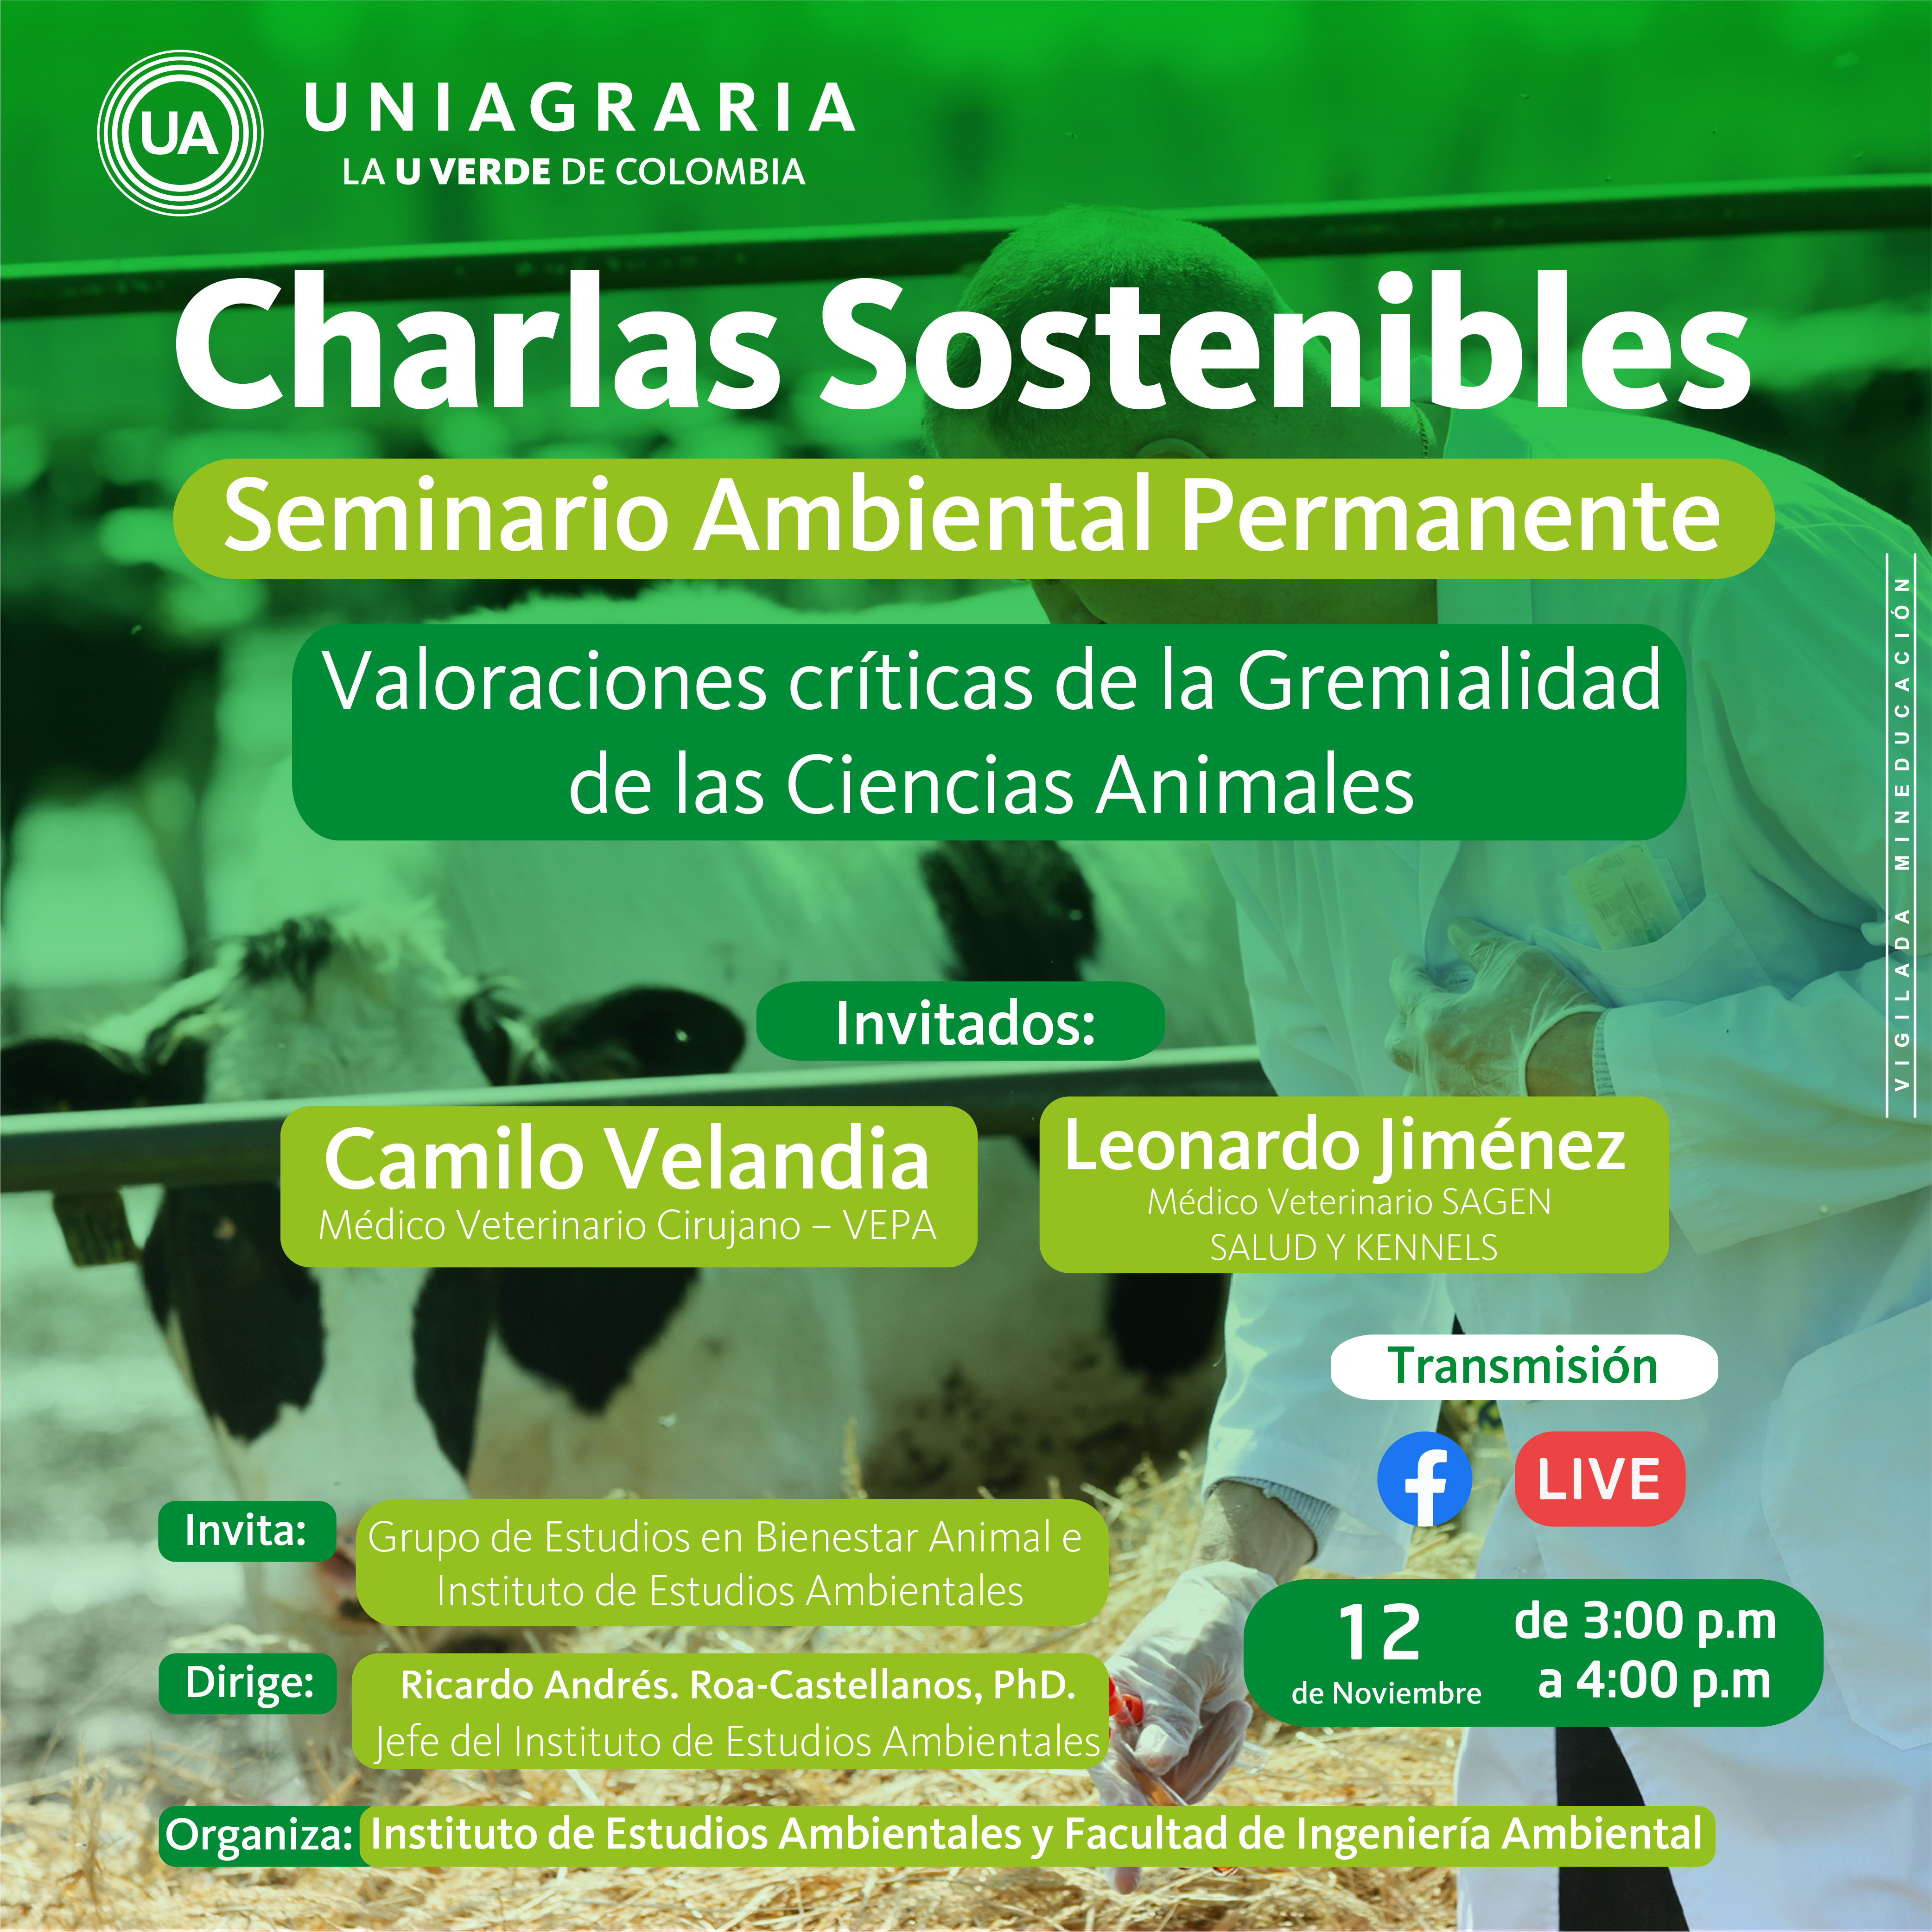 Charlas sostenibles: Seminario Ambiental Permanente